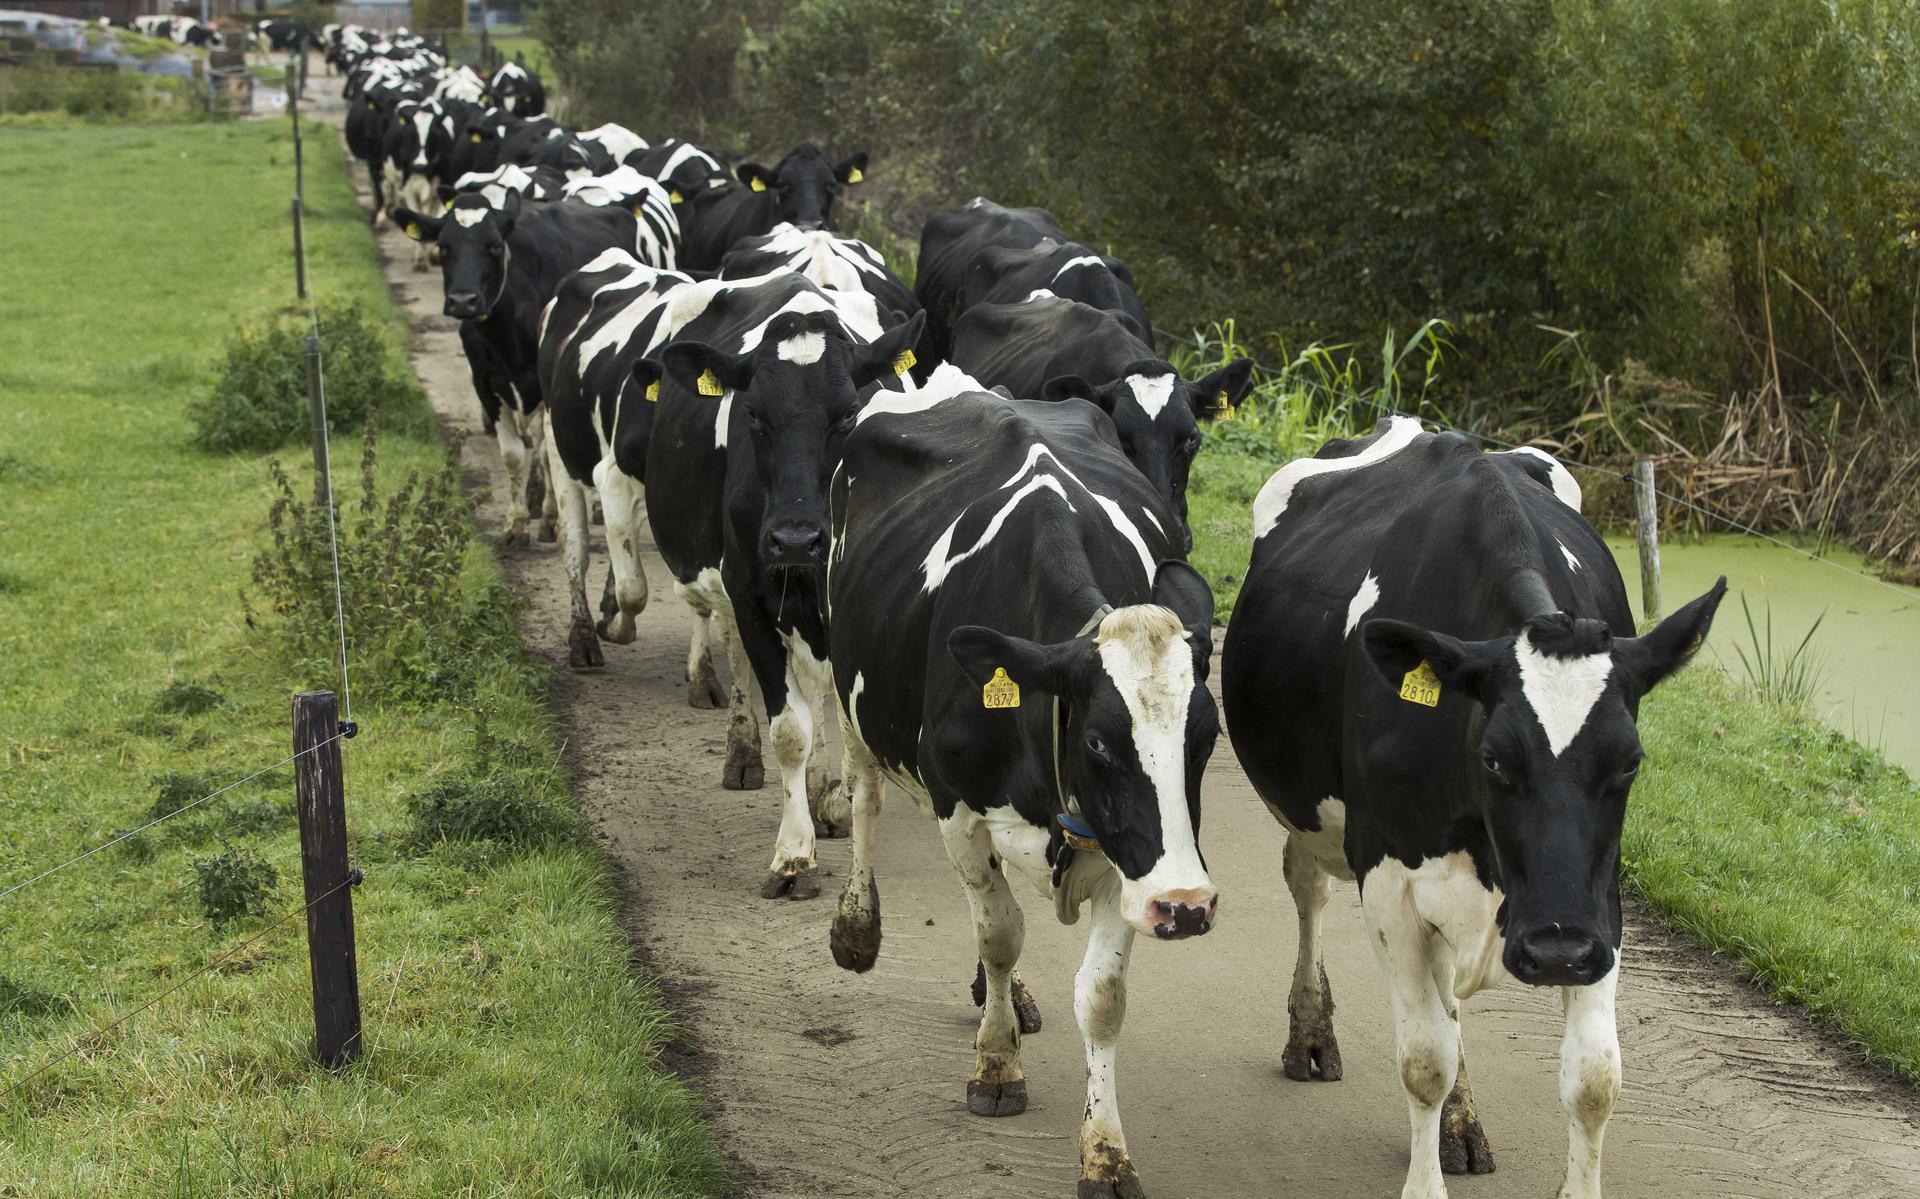 Uit onderzoeken van het Centraal Bureau voor de Statistiek CBS blijkt dat de fosfaatproductie die wordt veroorzaakt door de Nederlandse veestapel grotendeels wordt veroorzaakt door de melkveehouderij. 